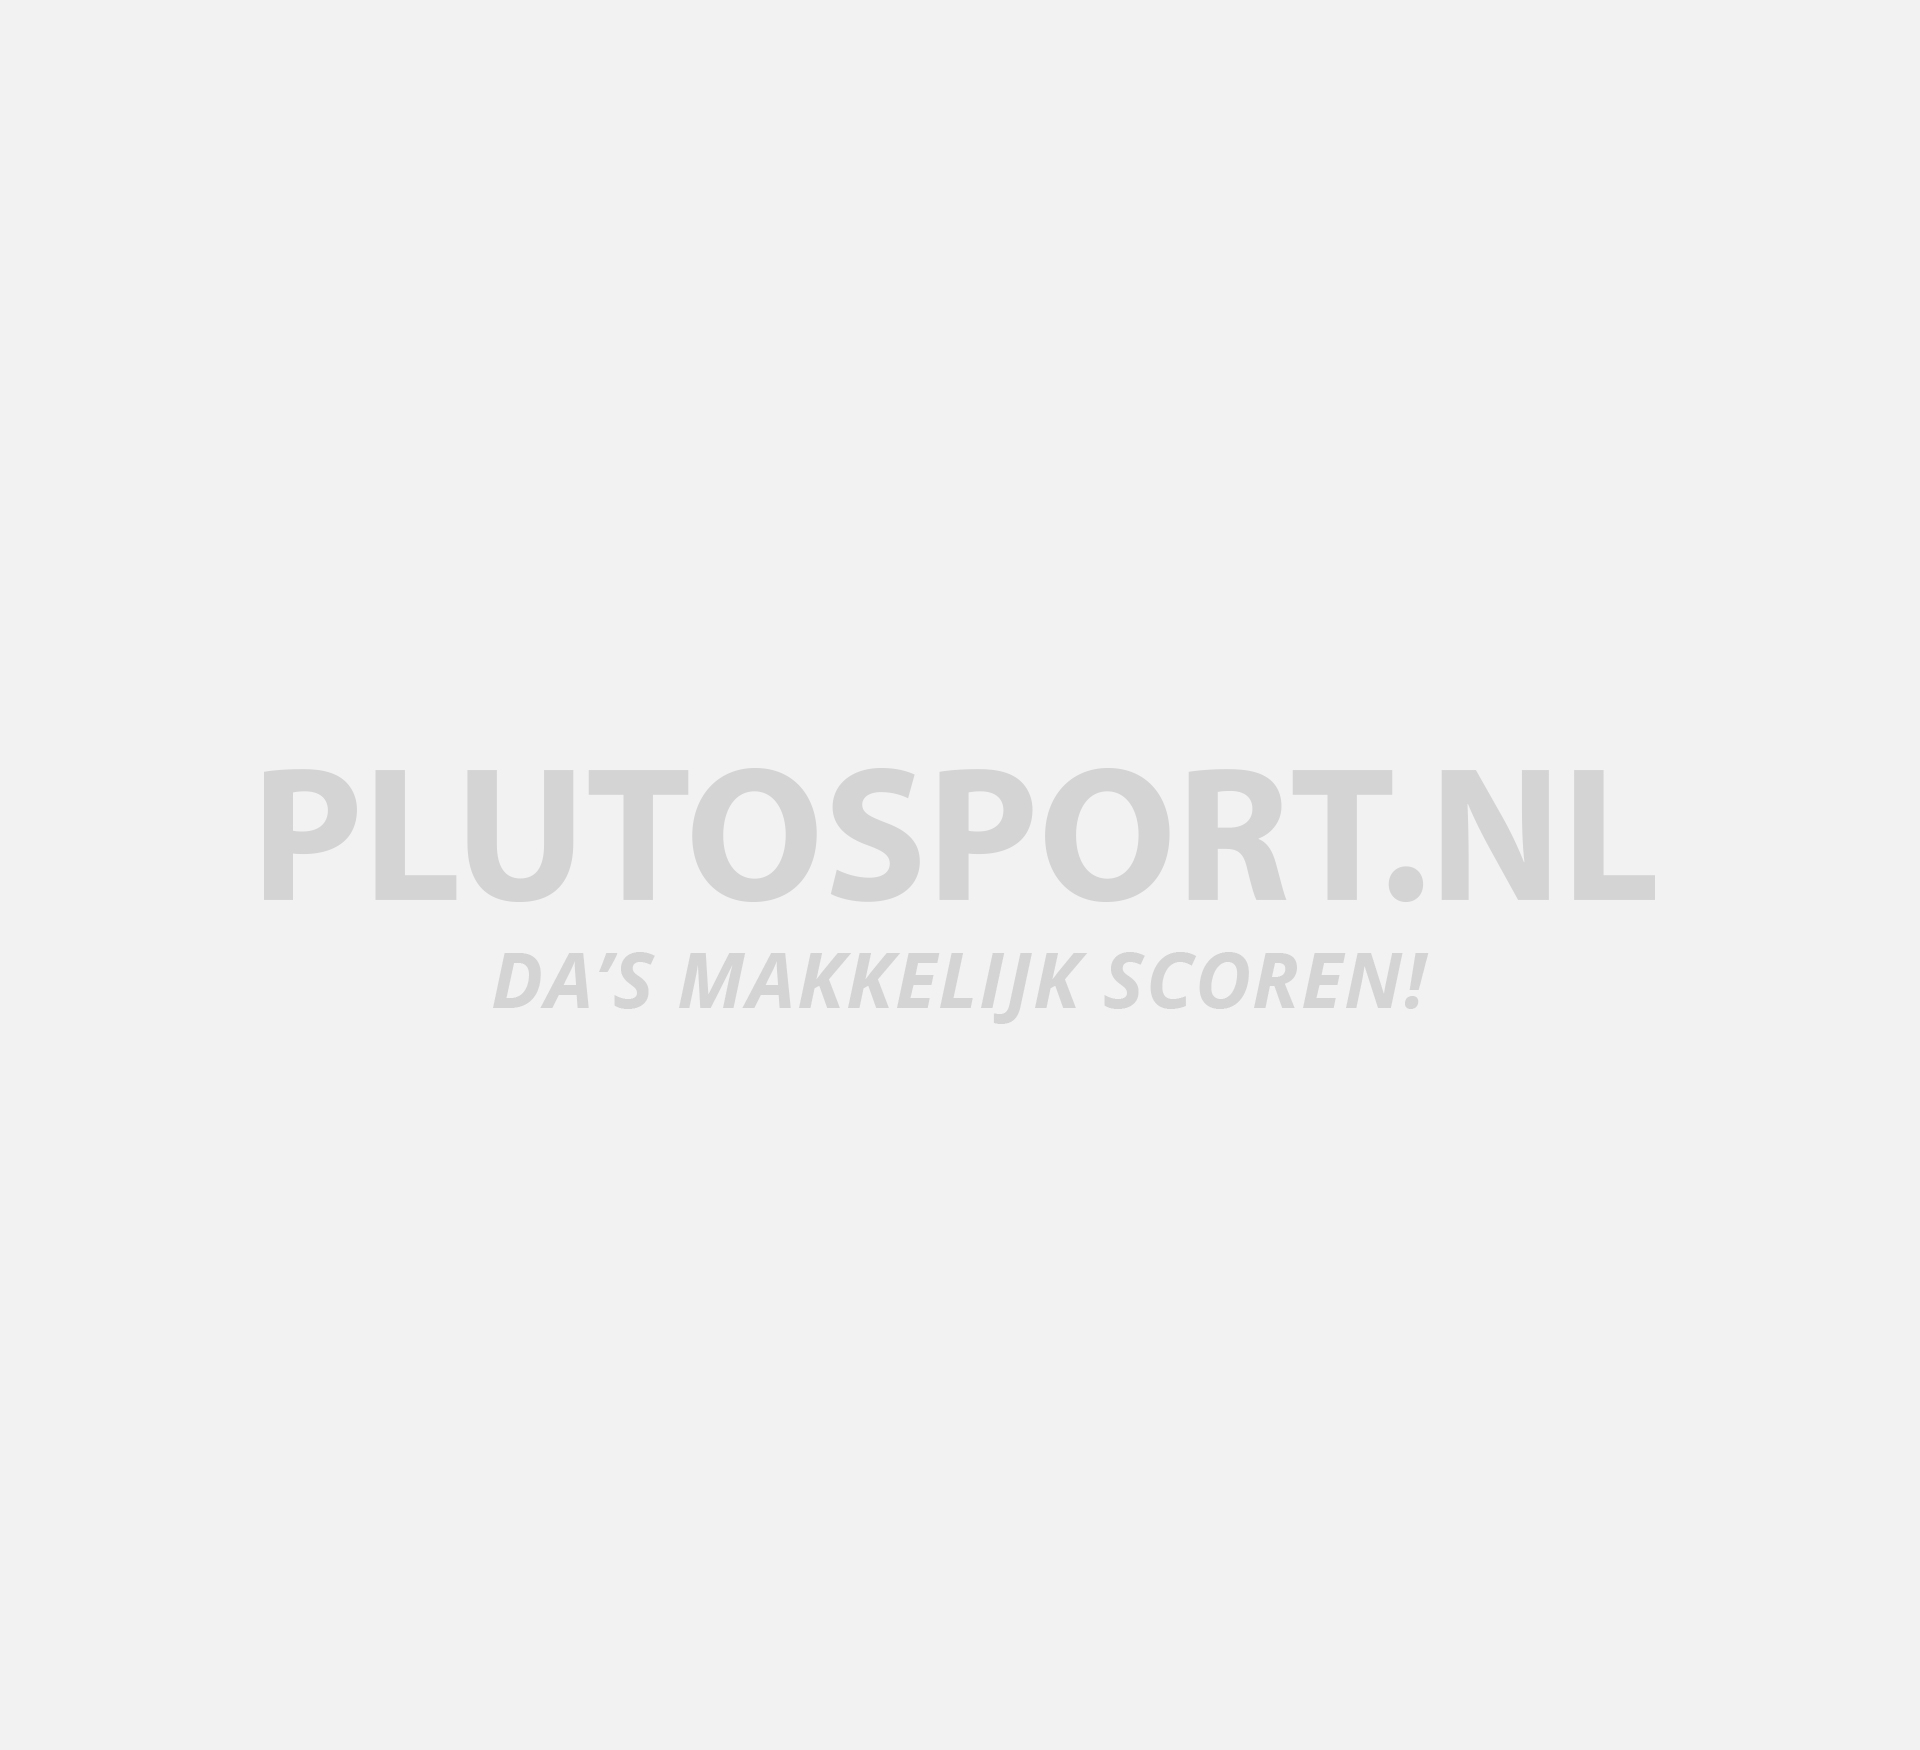 Max 2017 | Plutosport